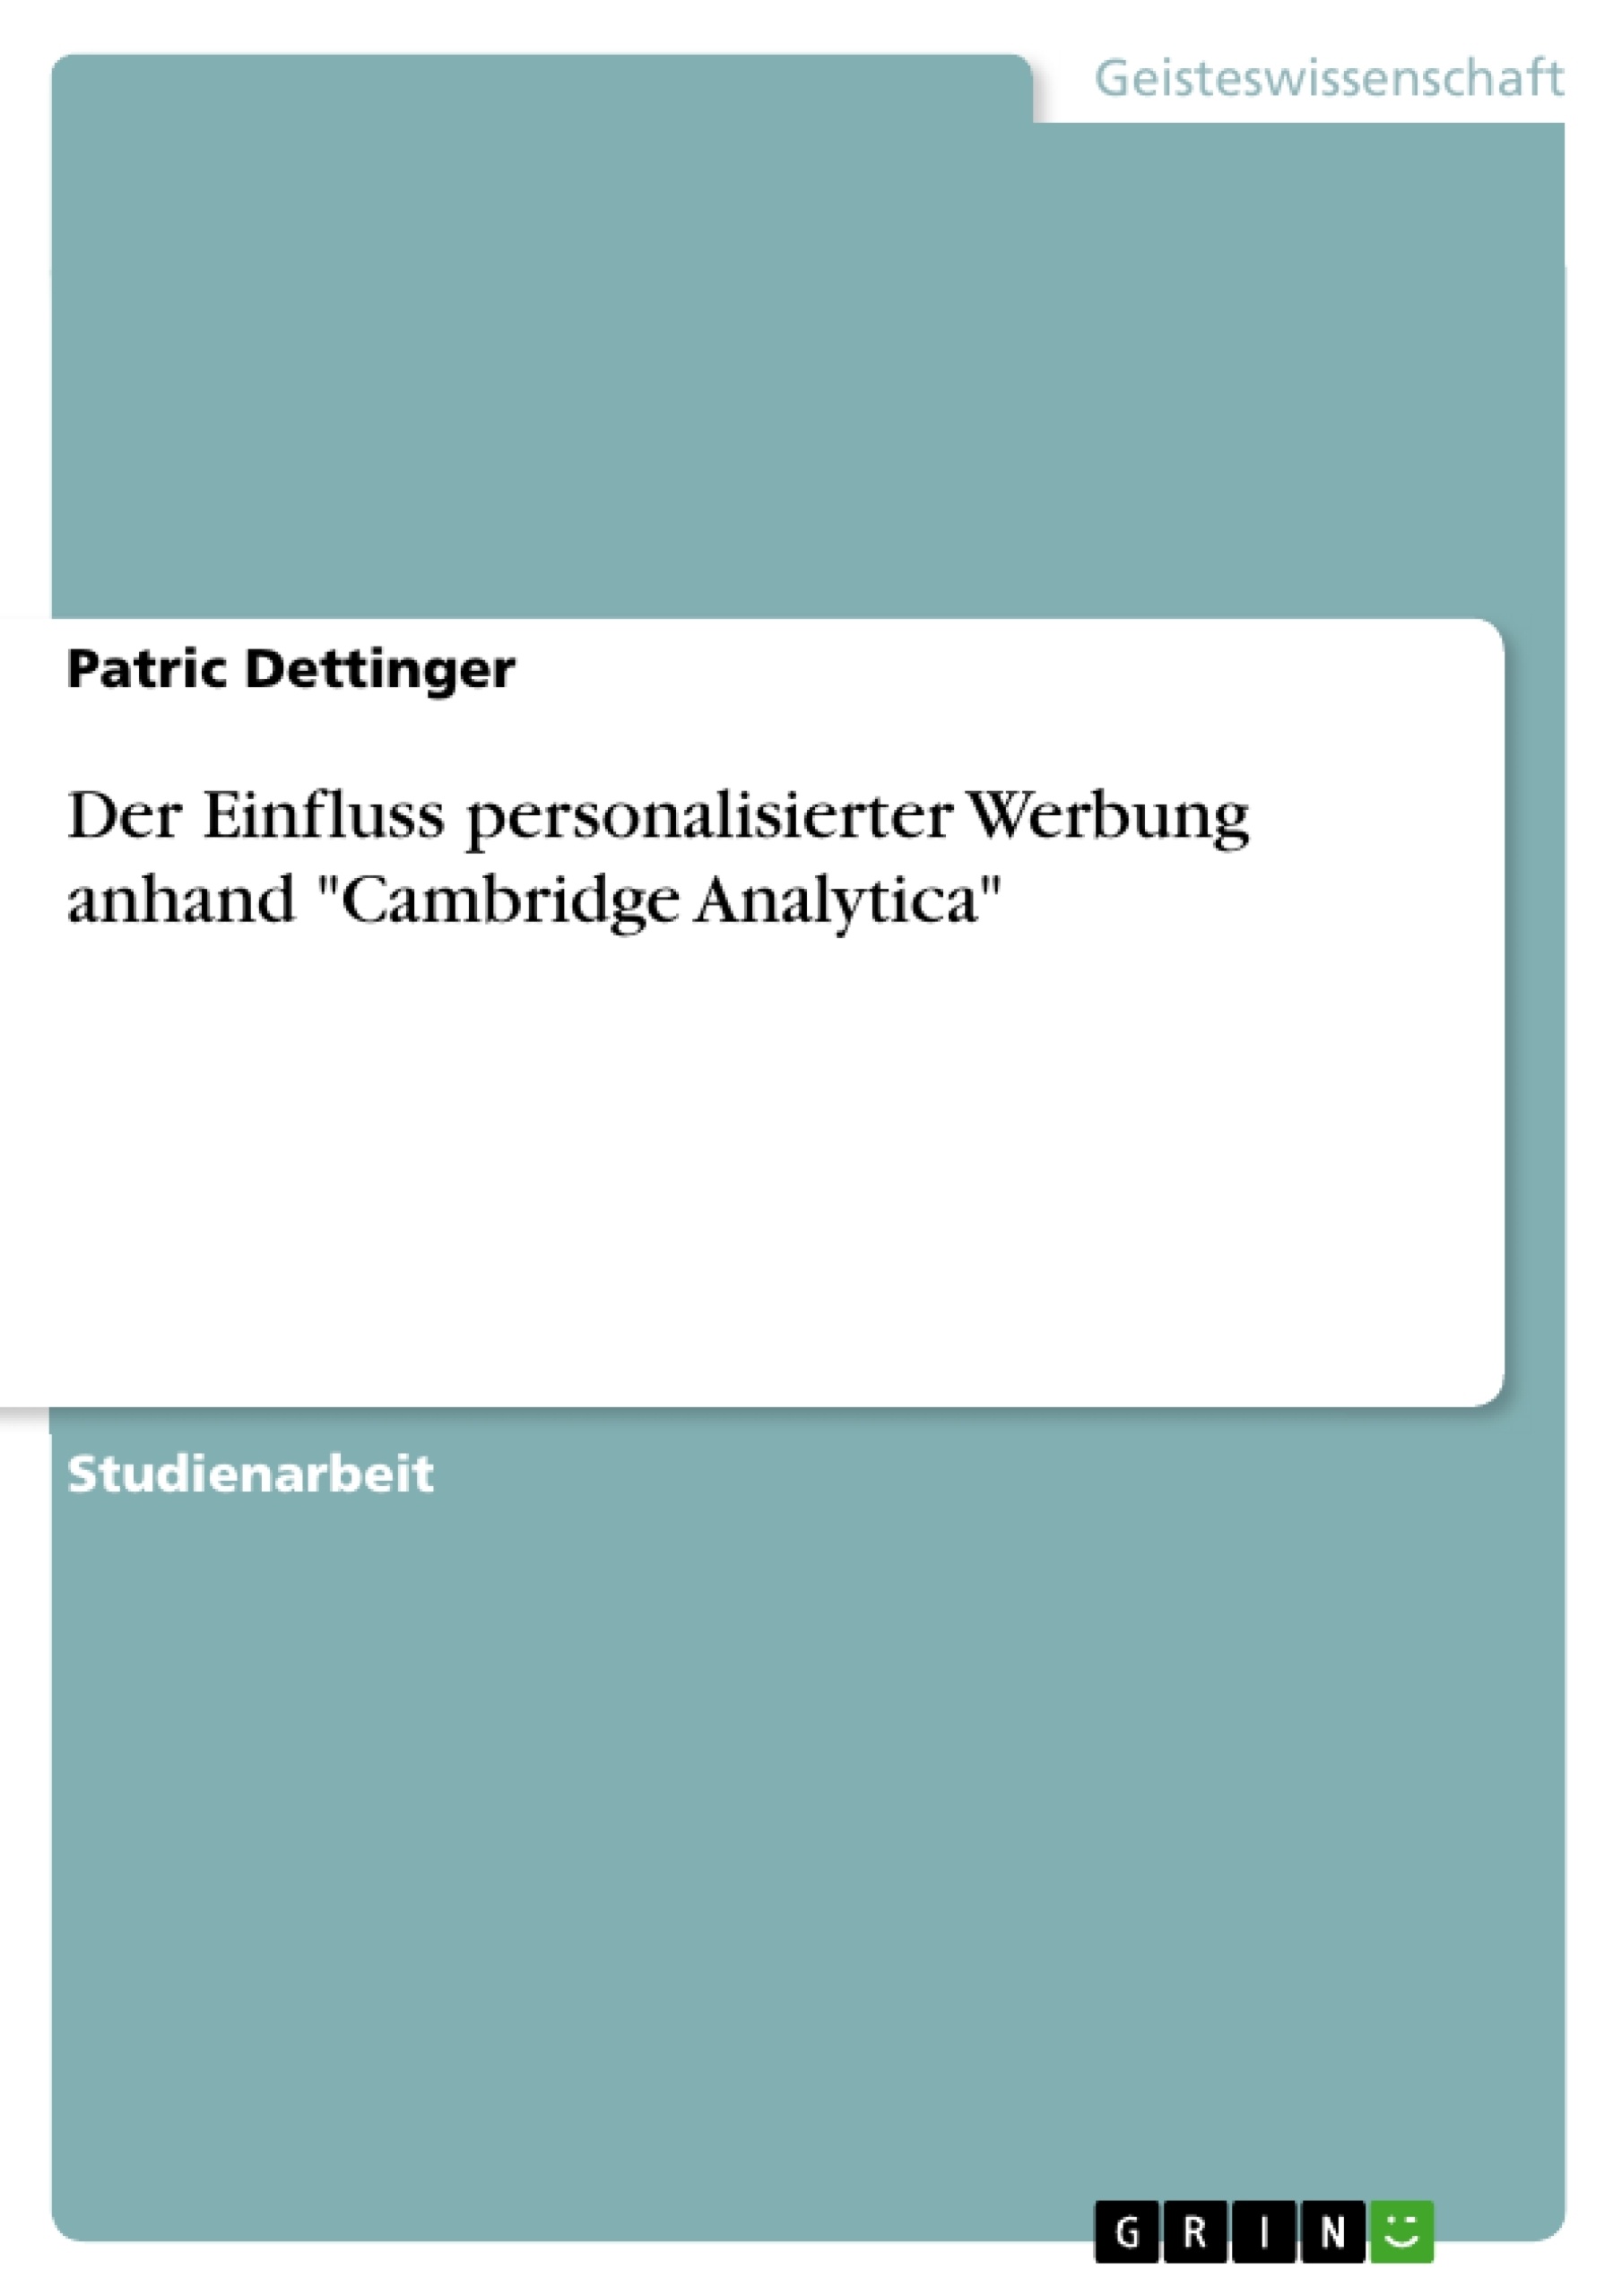 Título: Der Einfluss personalisierter Werbung anhand "Cambridge Analytica"